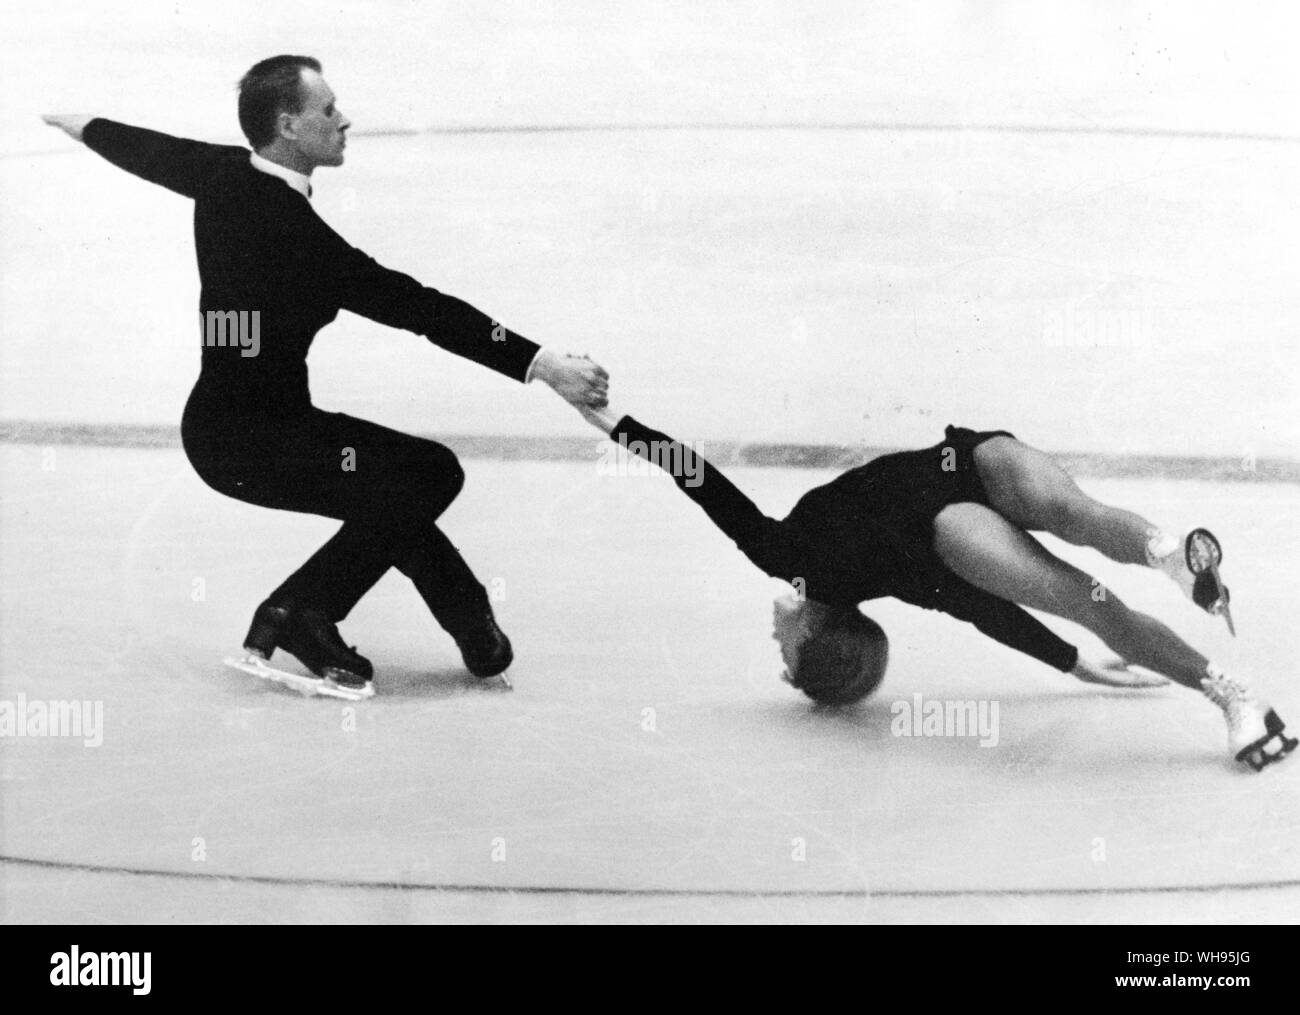 Österreich, Innsbruck, Olympischen, 1964: Belouscova und Protopopow in den Zweiergruppen Skating - die berühmten todesspirale bewegen. Stockfoto